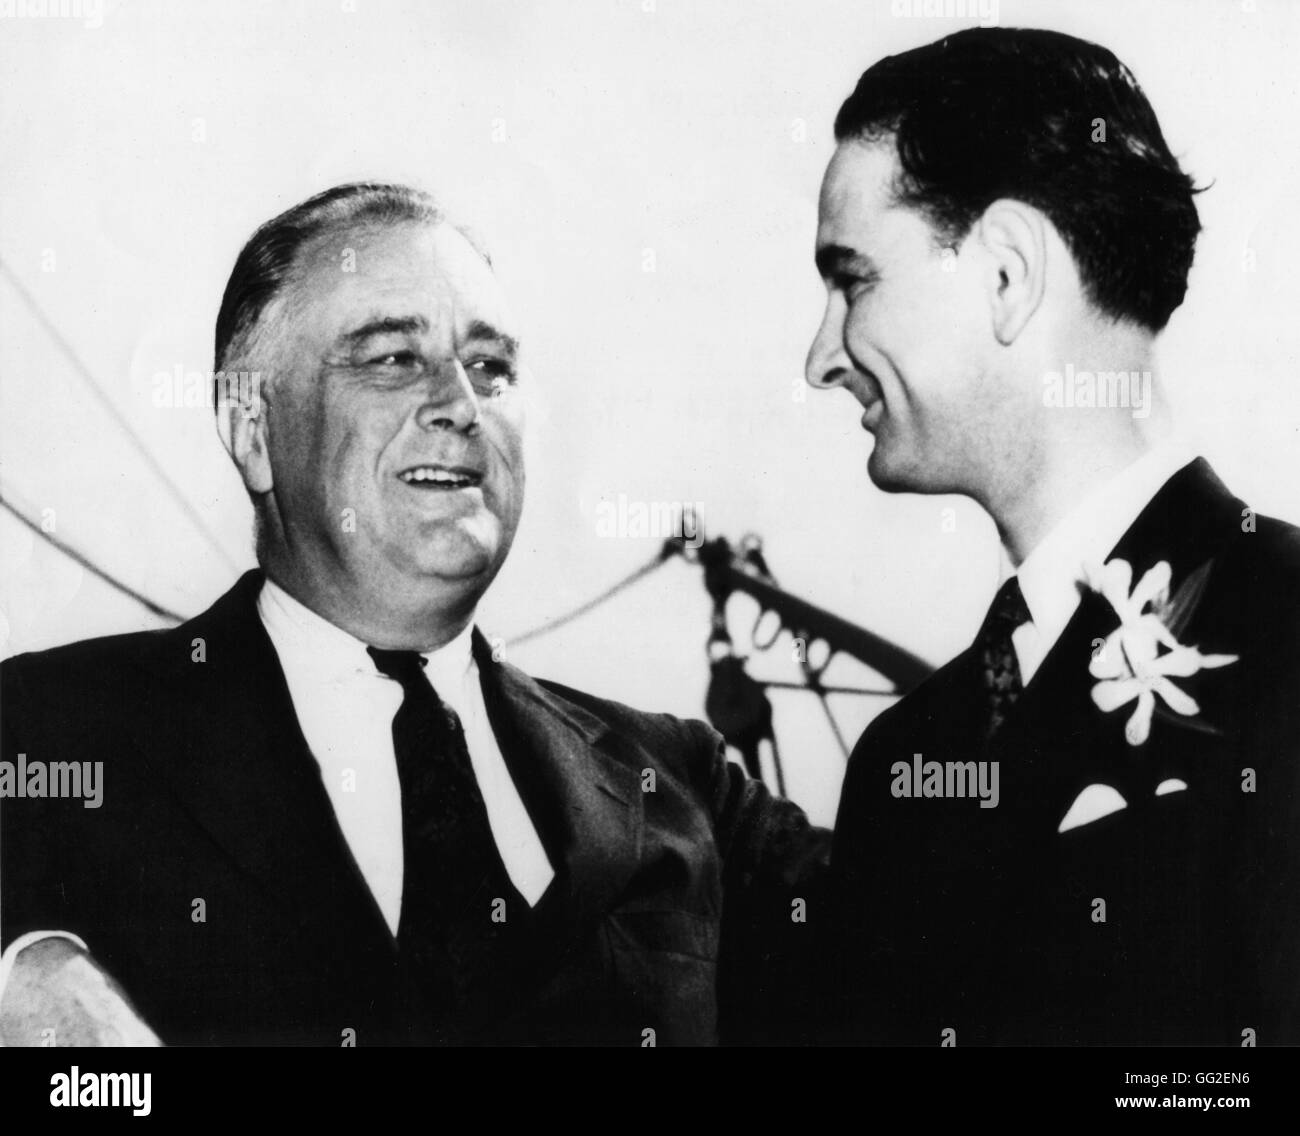 Le président Roosevelt et L. Johnson, qui était alors un membre du Congrès américain, dans la région de Galveston. Mai 1937 United States Banque D'Images